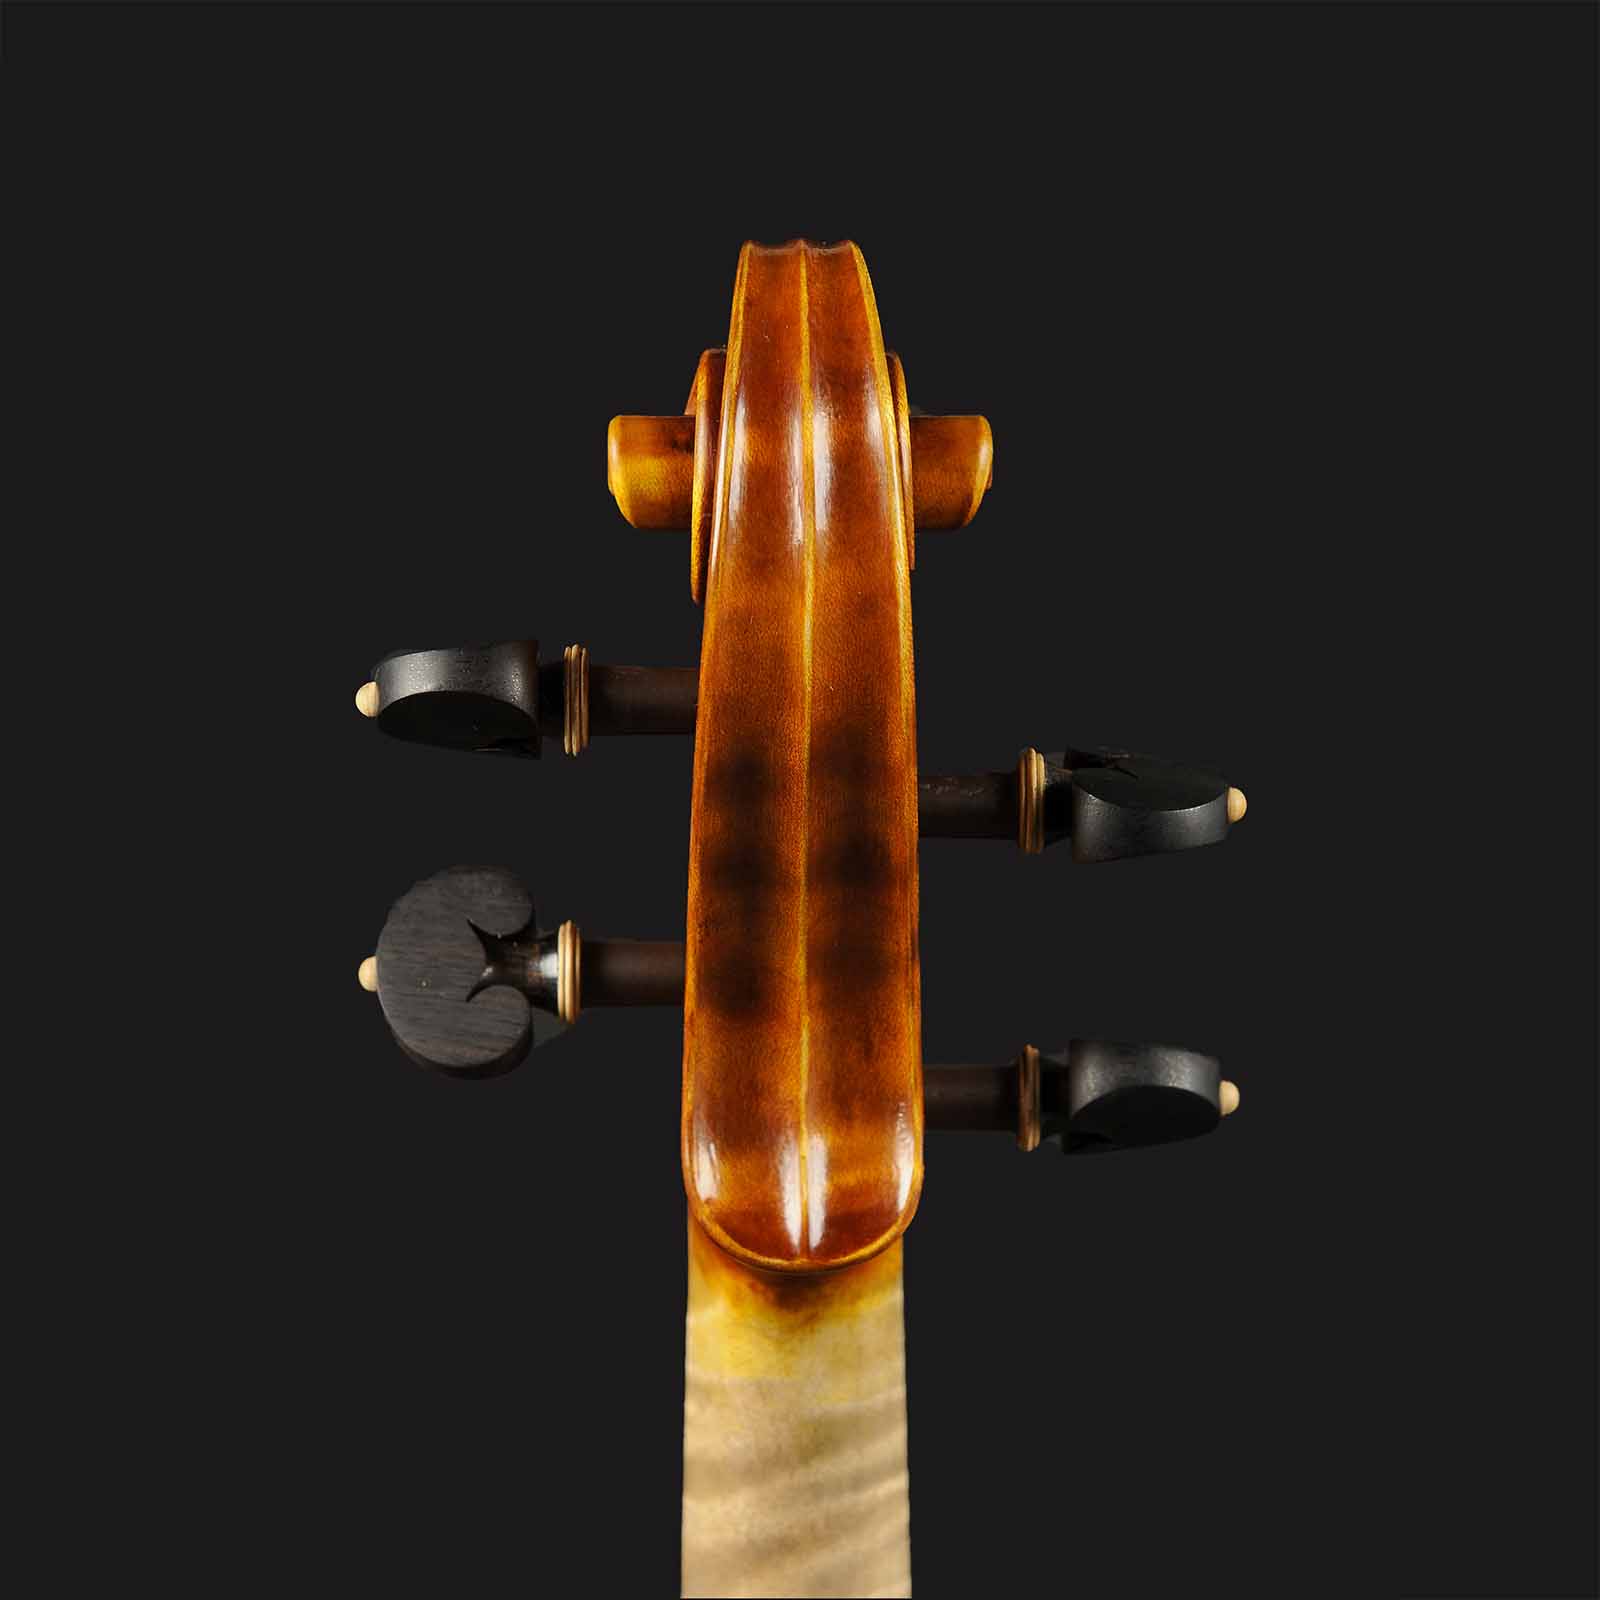 Stradivari & Del Gesù Stradivari & Mod. Del Gesù “The Twins“ - Image 6